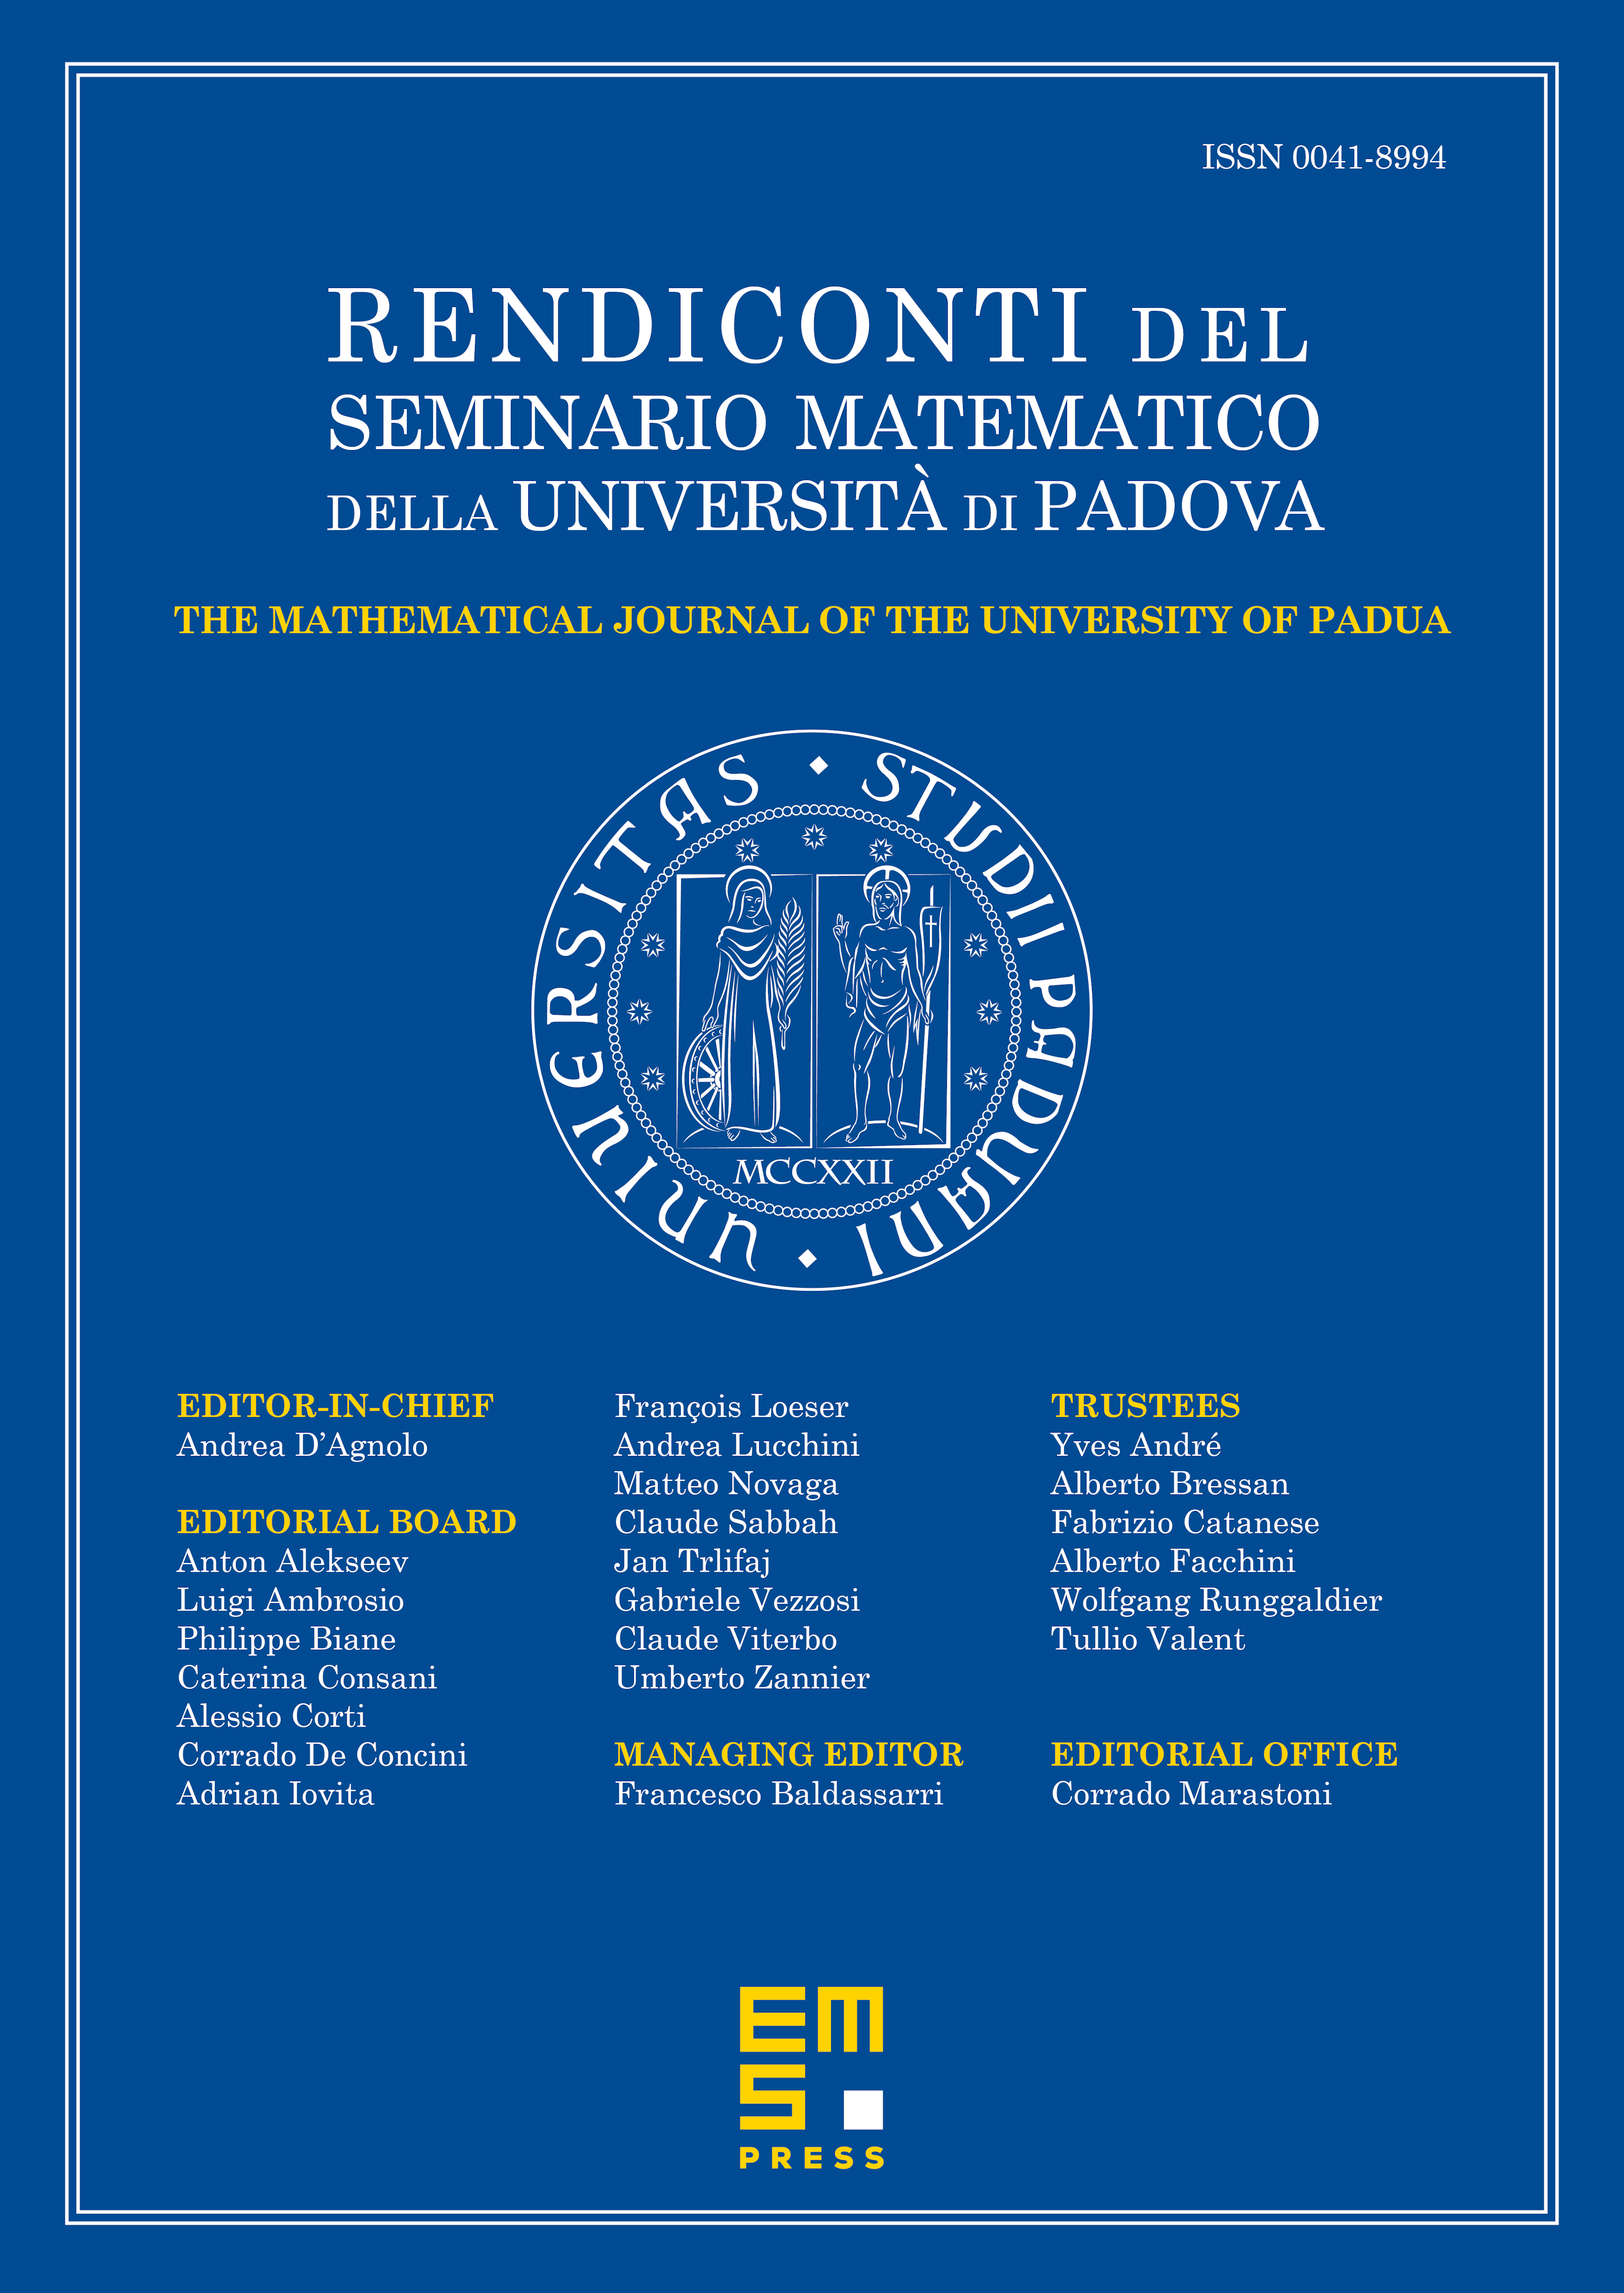 Rendiconti del Seminario Matematico della Università di Padova cover